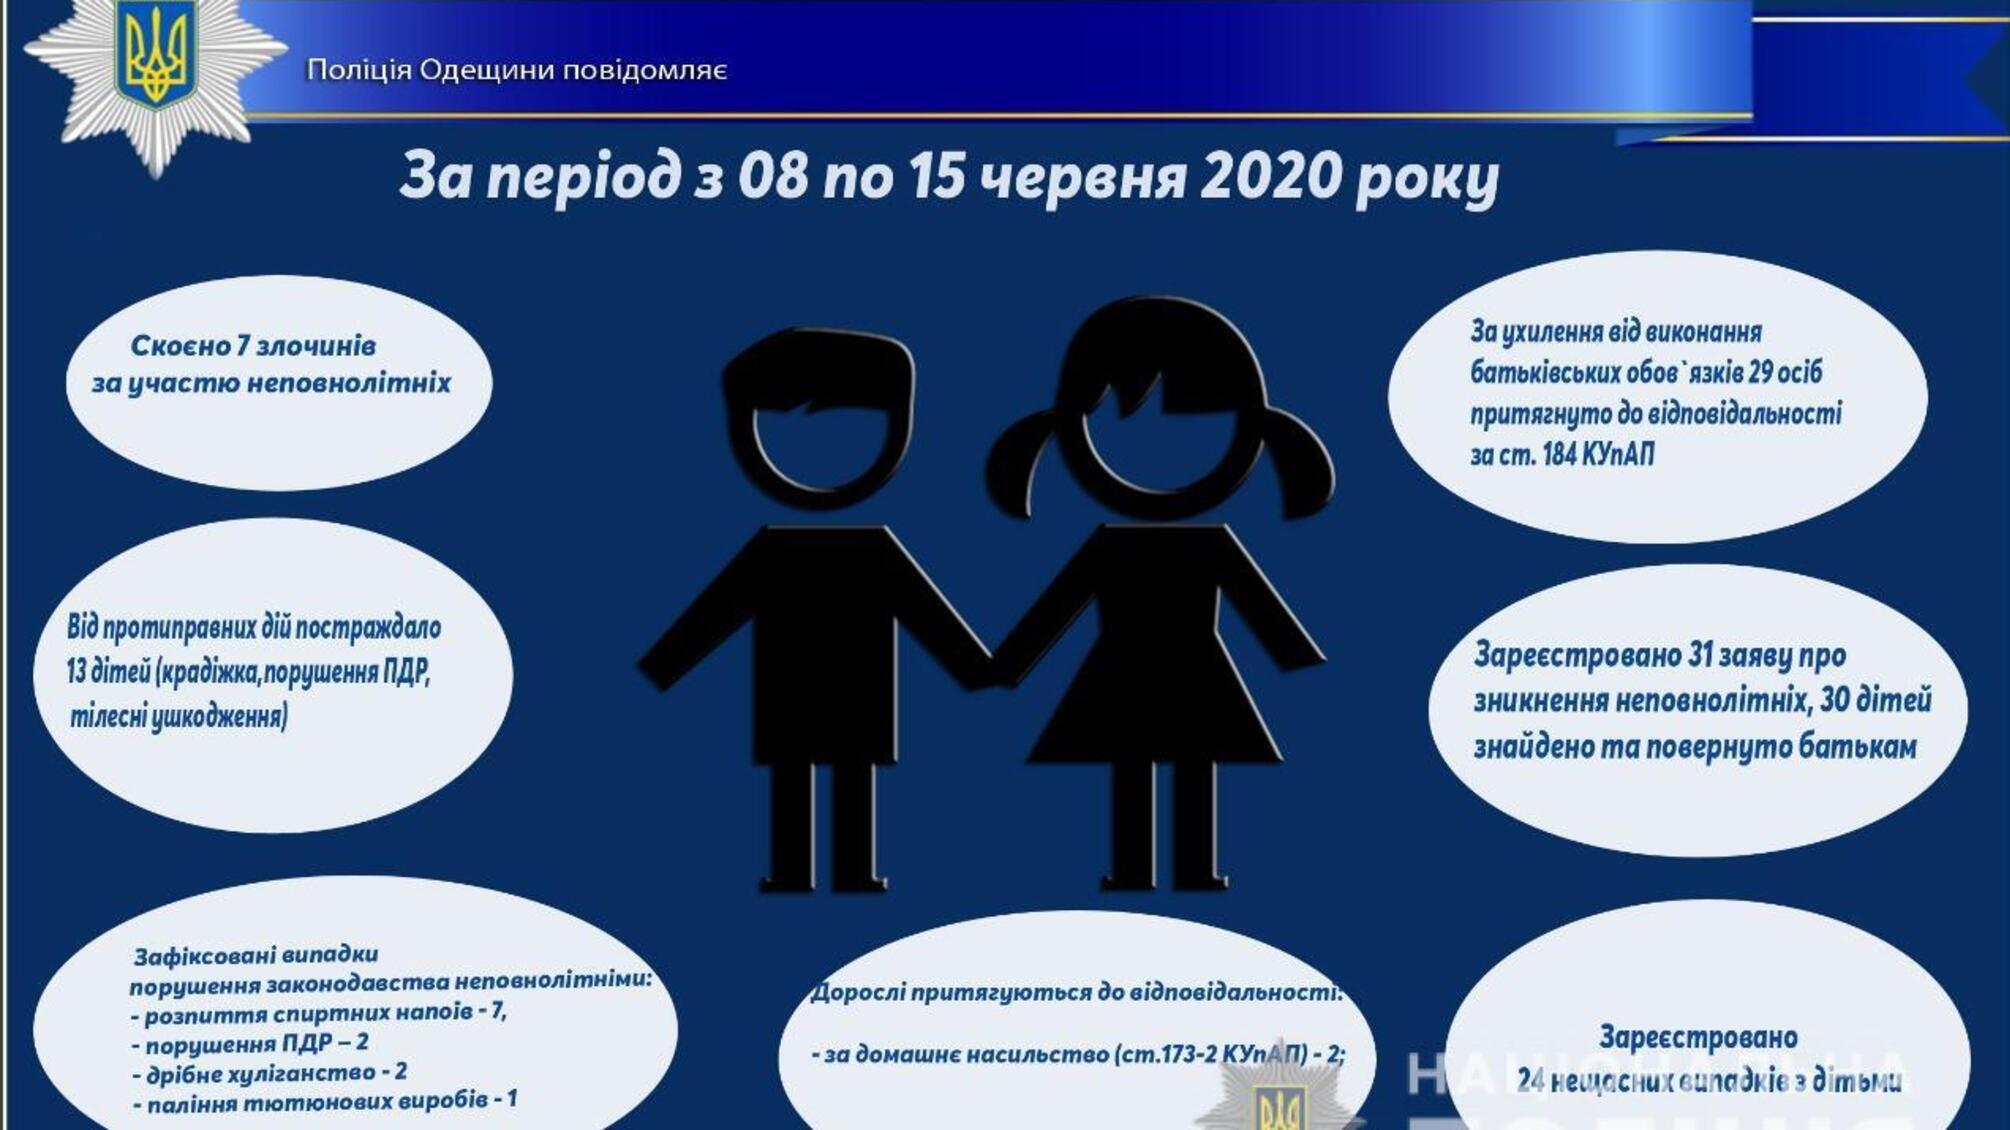 Про стан роботи поліції Одещини з протидії порушенням законодавства неповнолітніми та відносно них за період з 08 по 15 червня 2020 року